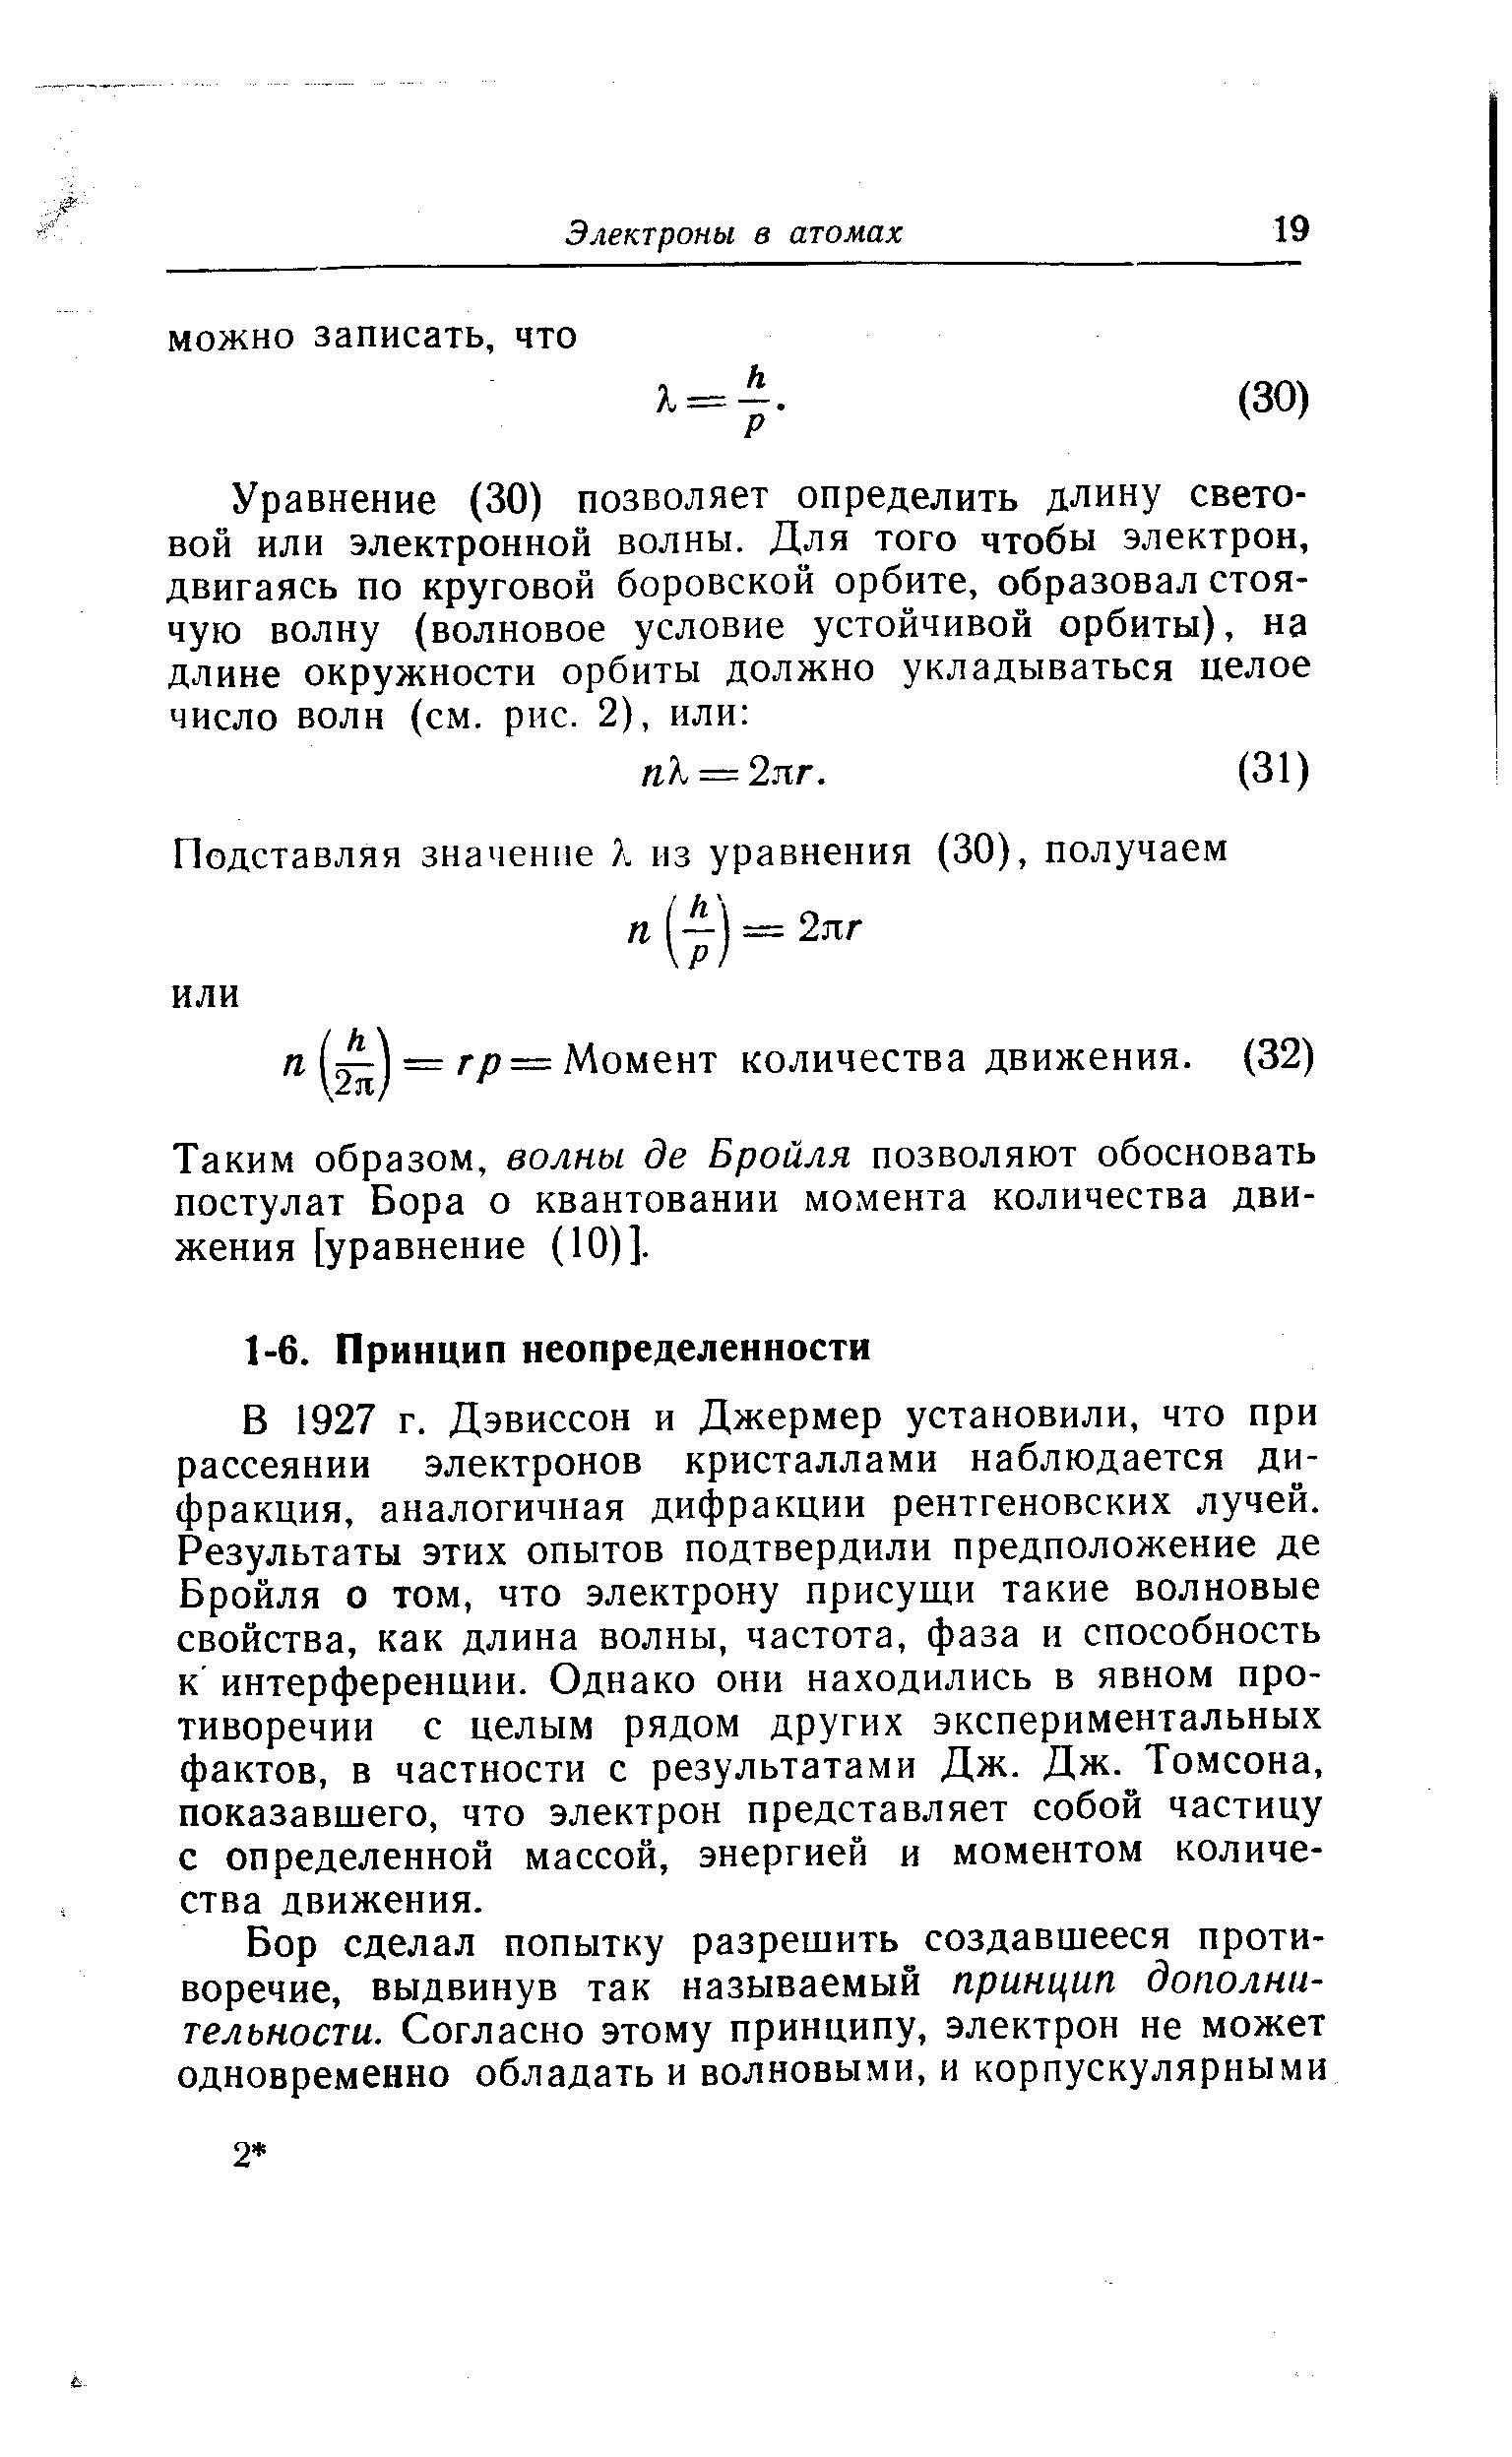 В 1927 г. Дэвиссон и Джермер установили, что при рассеянии электронов кристаллами наблюдается дифракция, аналогичная дифракции рентгеновских лучей. Результаты этих опытов подтвердили предположение де Бройля о том, что электрону присущи такие волновые свойства, как длина волны, частота, фаза и способность к интерференции. Однако они находились в явном противоречии с целым рядом других экспериментальных фактов, в частности с результатами Дж. Дж. Томсона, показавшего, что электрон представляет собой частицу с определенной массой, энергией и моментом количества движения.